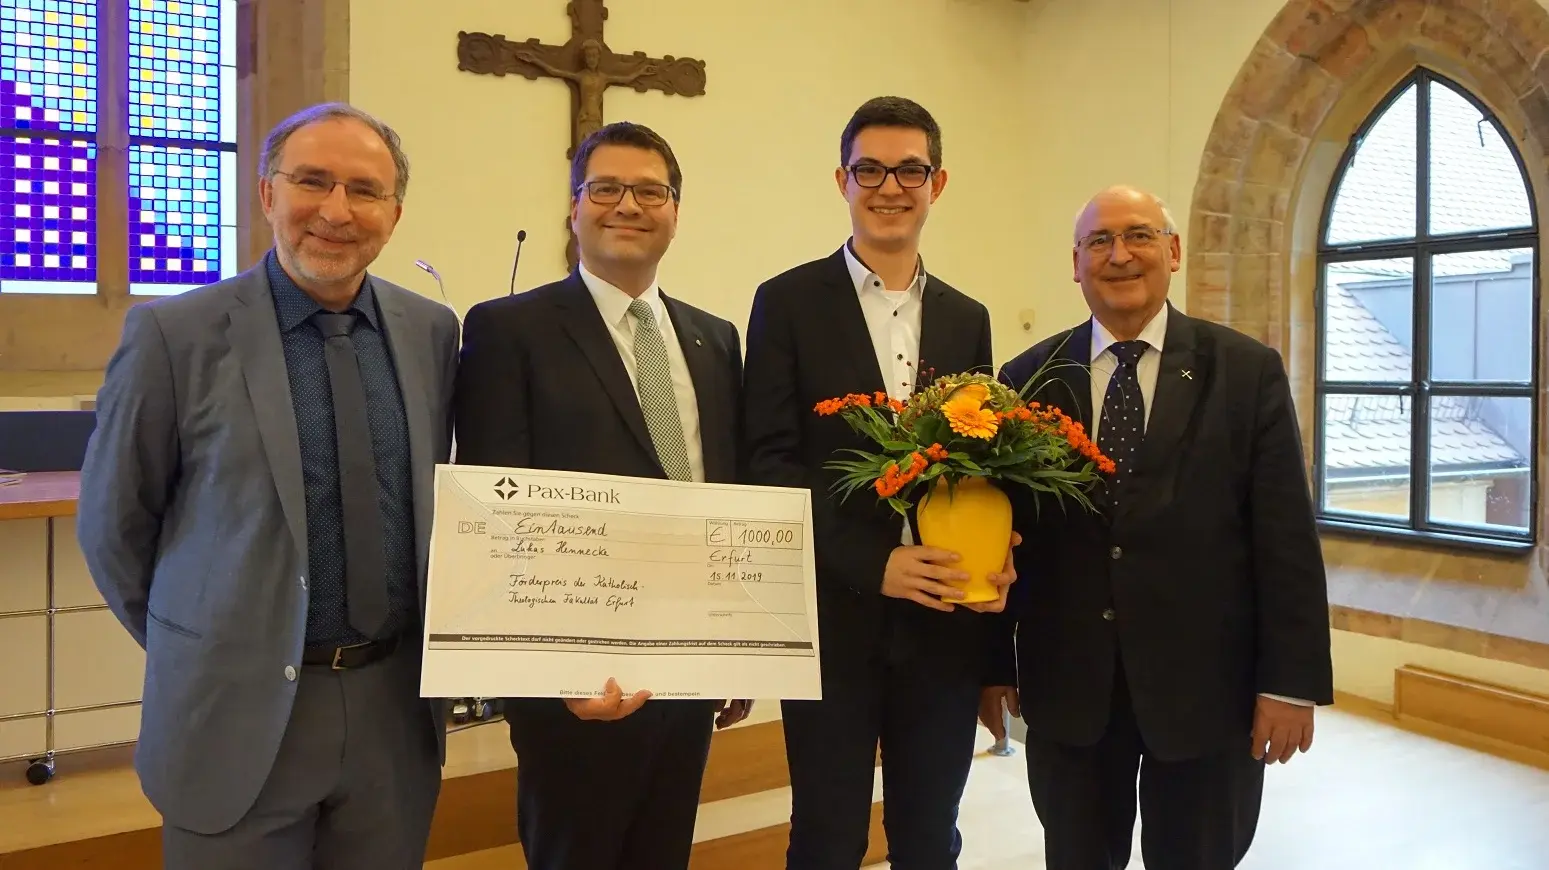  Lukas Hennecke erhält beim Patronatsfest der Katholisch-Theologischen Fakultät der Universität Erfurt, Albertus Magnus, 2019 den Förderpreis